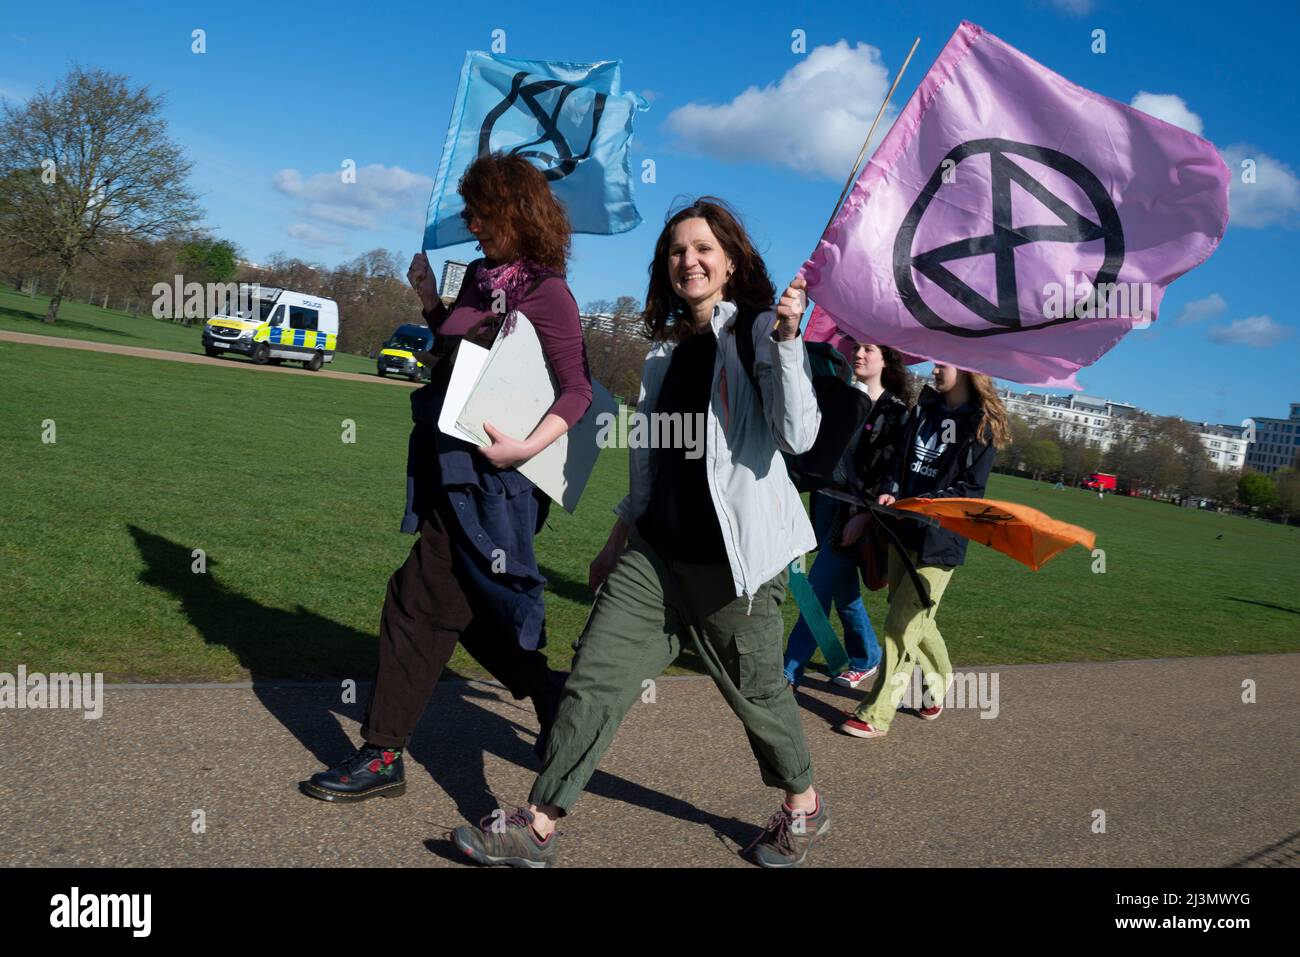 Hyde Park, London, Großbritannien. 9. April 2022. Die Demonstranten des Extinction Rebellion versammeln sich im Speakers Corner im Hyde Park vor einer Phase ziviler Widerstandsaktionen, die in London und darüber hinaus zu Störungen führen könnten, aus Protest gegen angebliche Ursachen des Klimawandels. Frauen kommen Stockfoto